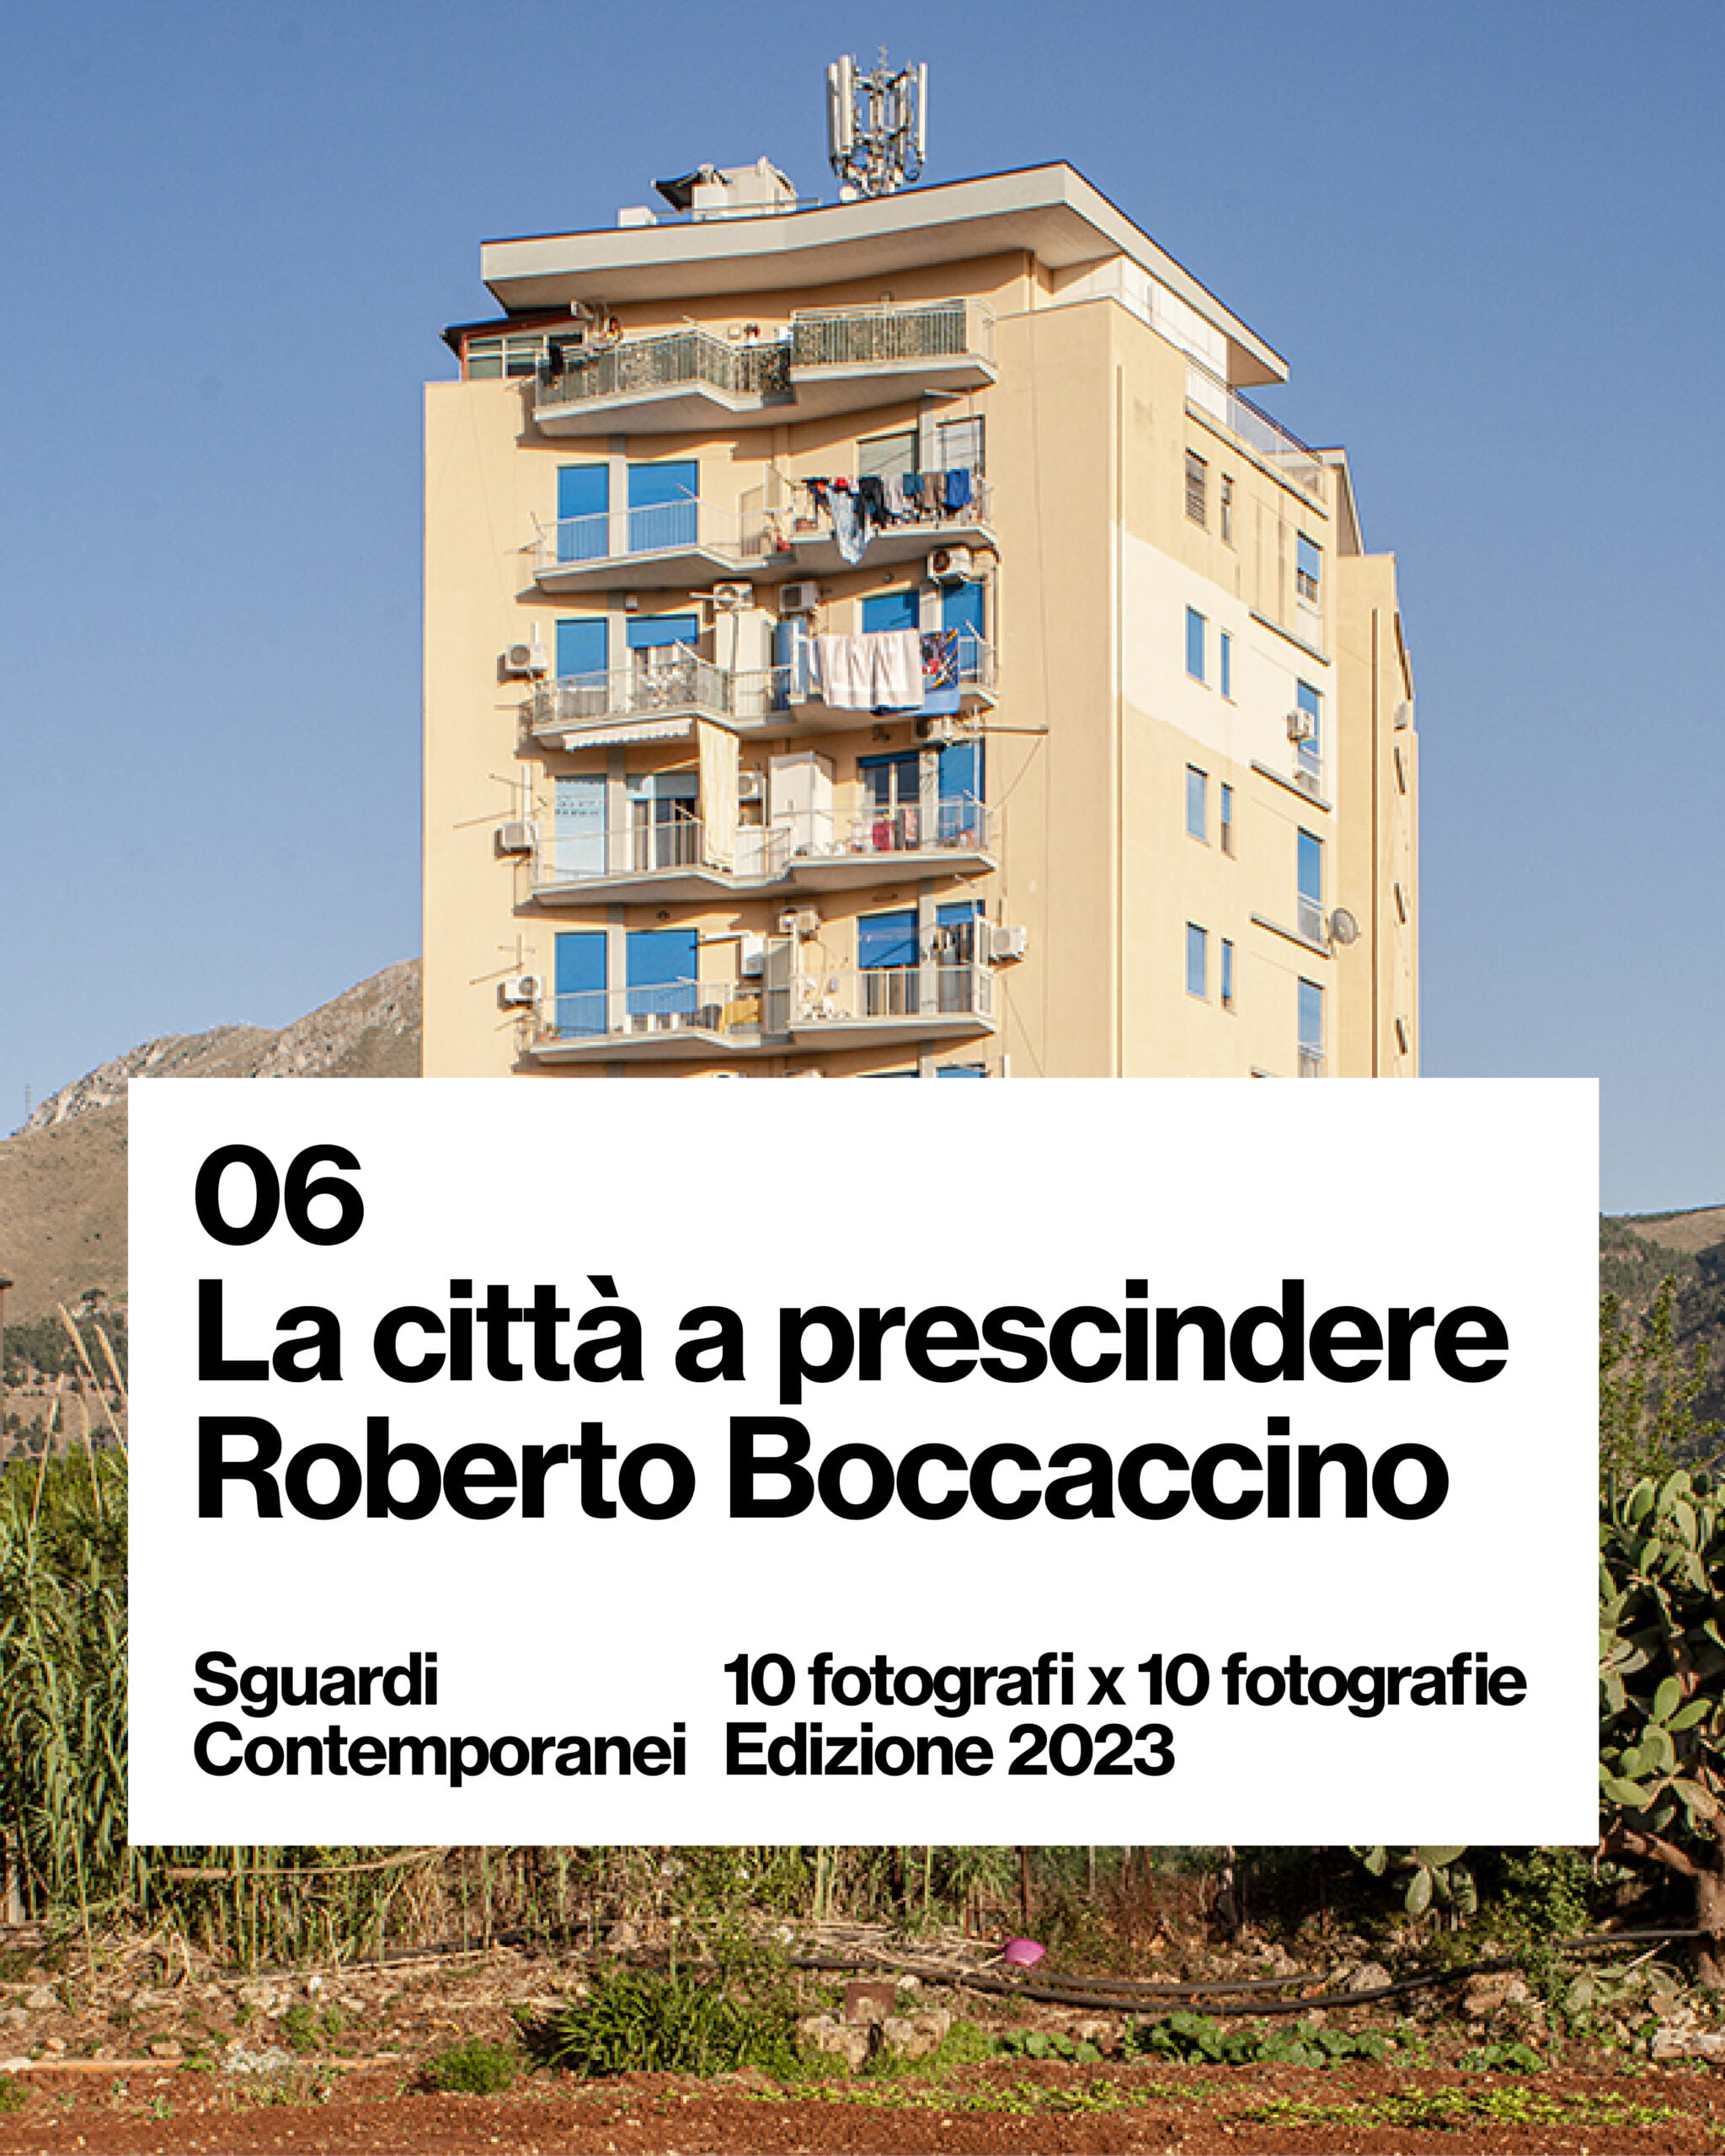 © FA — Fotografia dell'Architettura, 06 Boccaccino